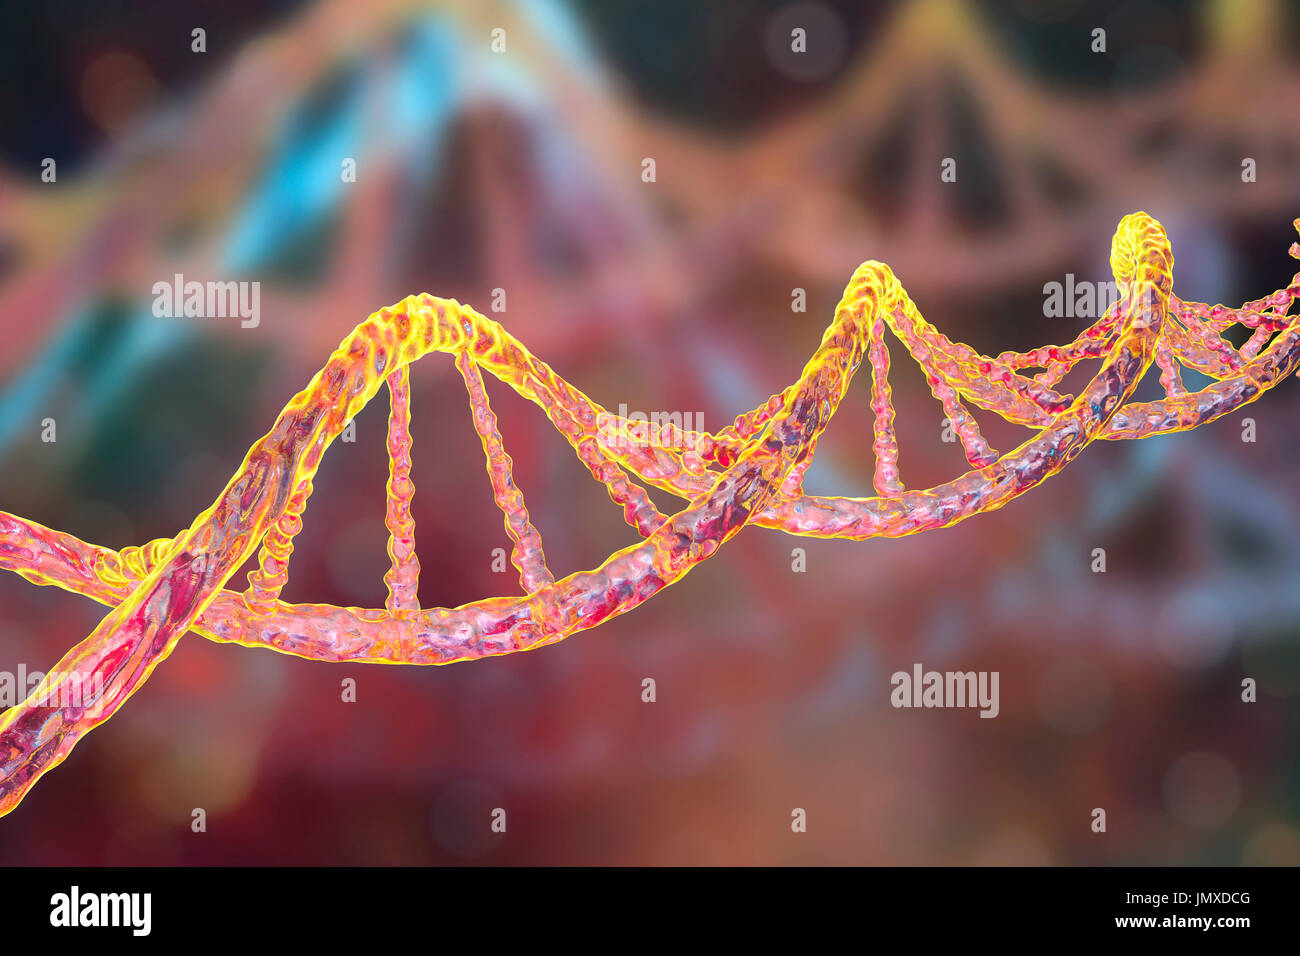 Molecola di DNA, computer grafica. La molecola di DNA (acido desossiribonucleico) è costituito da una lunga doppia elica di fosfati e di zuccheri, collegate da coppie di basi nucleotidiche (palle e stecche). Queste coppie di base di nucleotide formano i gradini della scala a spirale visto qui. La sequenza di queste coppie di base formano il codice genetico che è alla base di tutte le forme di vita sulla terra. Un individuo sequenza genetica controlla la loro crescita e il loro sviluppo, e si è passati ai loro figli. Variazioni nella sequenza genetica nel corso di milioni di anni di evoluzione hanno prodotto la diversità della vita sulla terra. Foto Stock